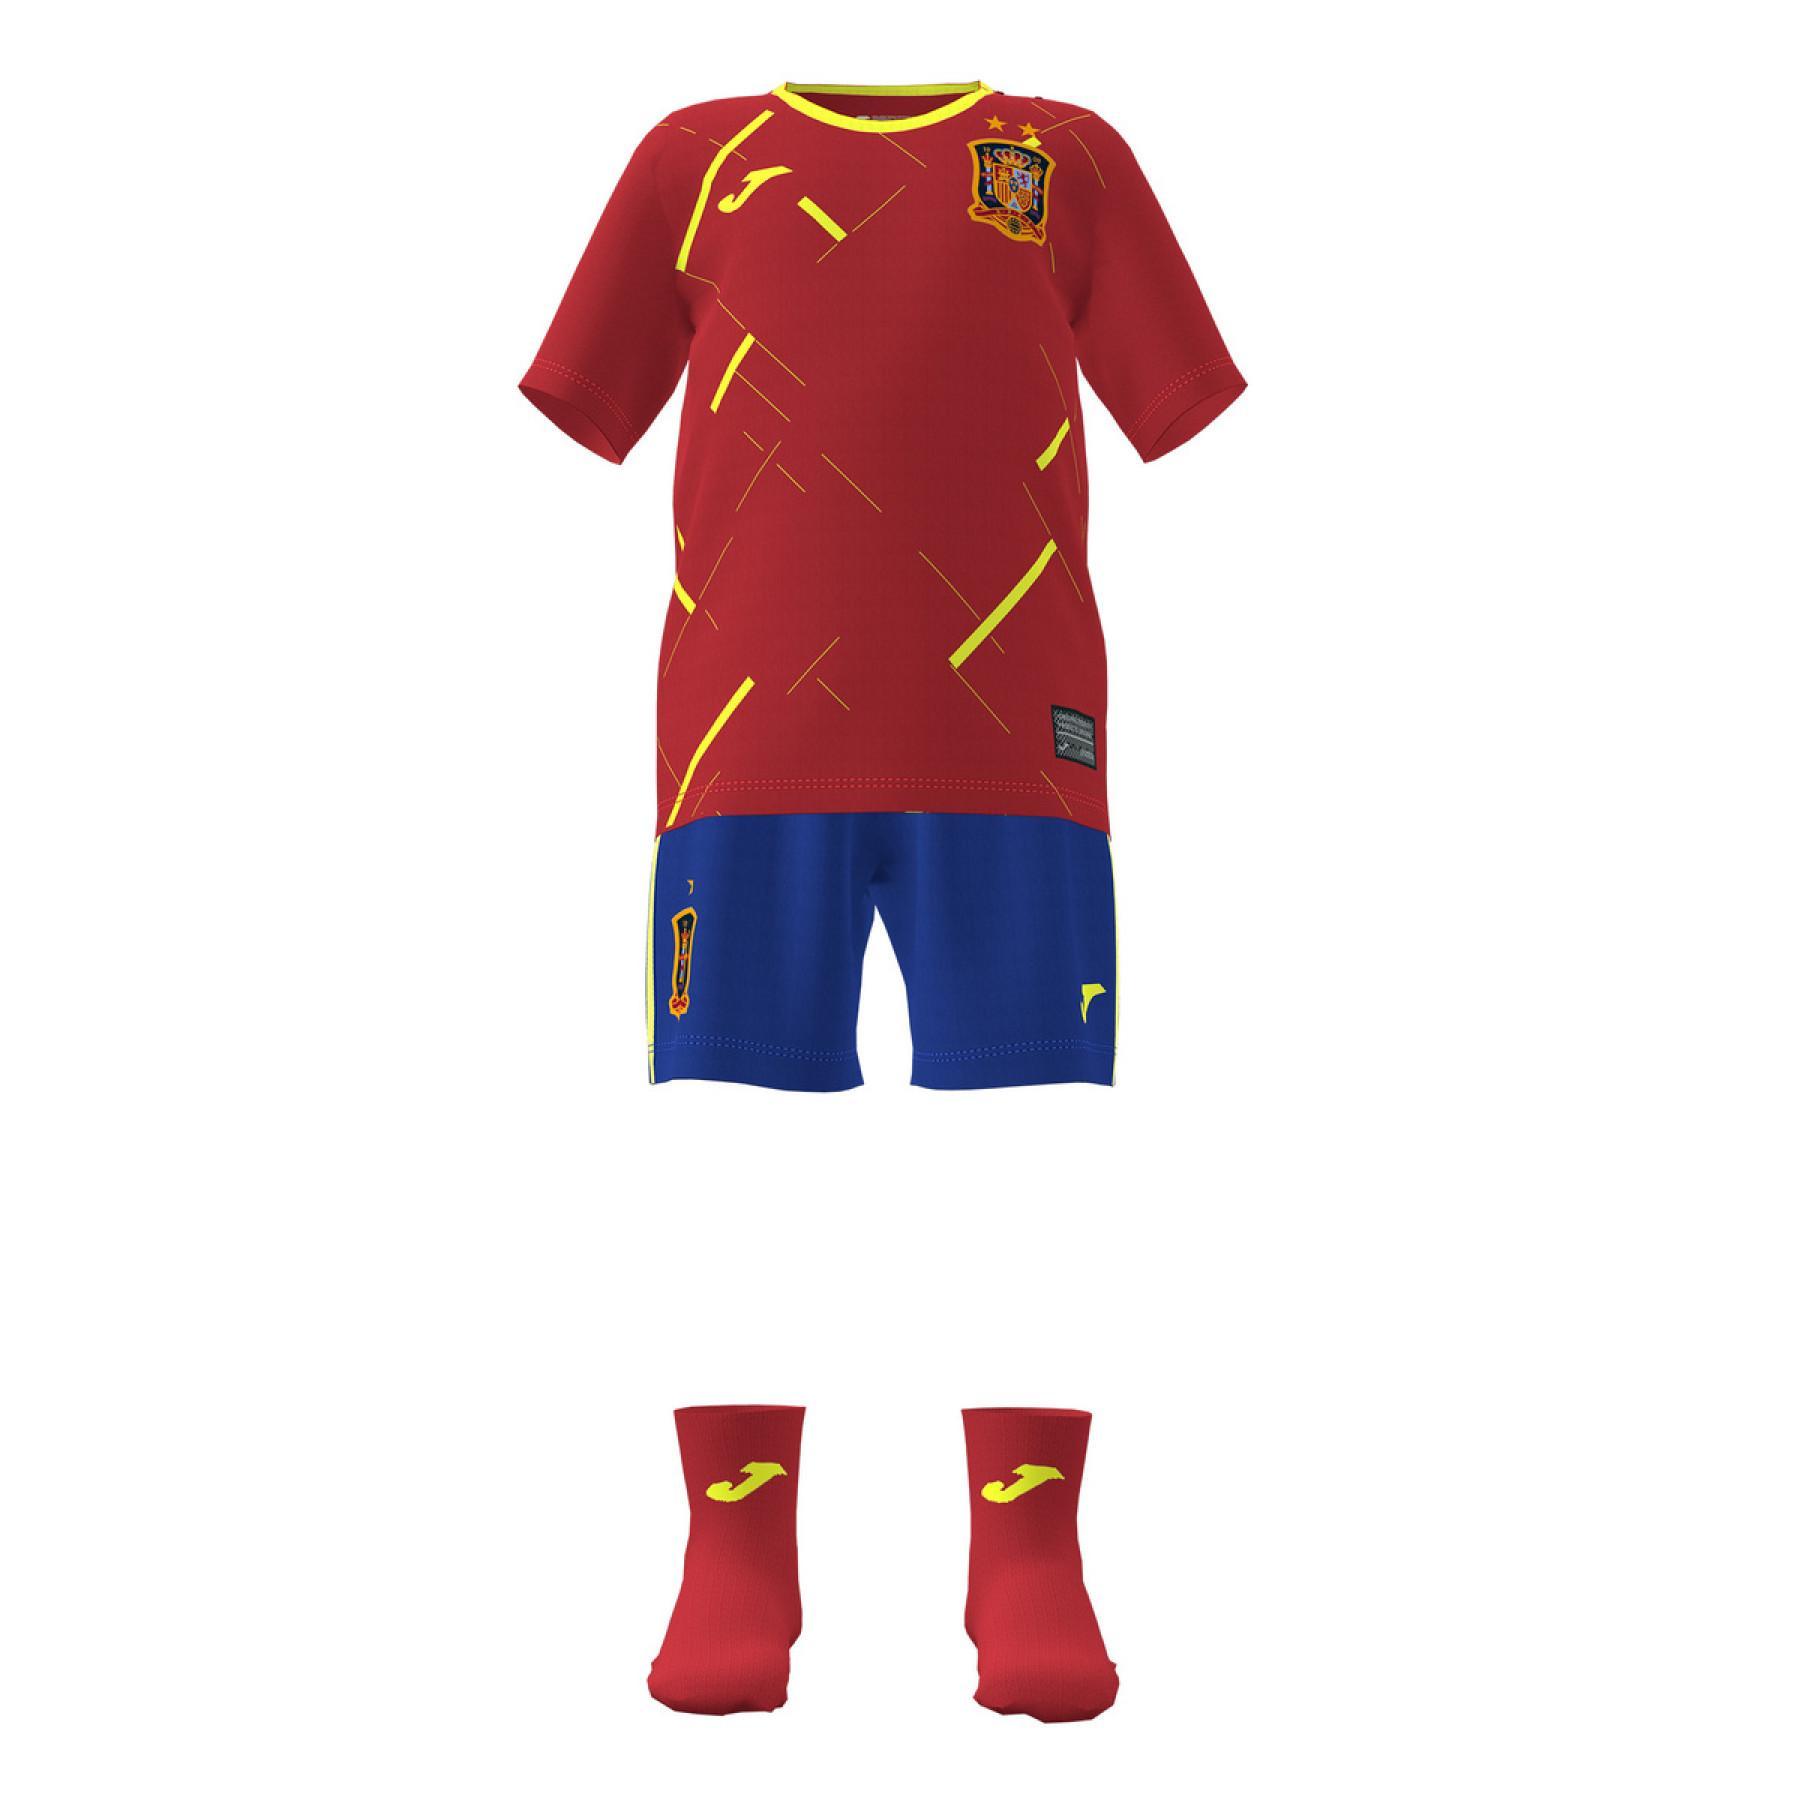 Mini-kit home bambini Espagne Futsal 2020/21